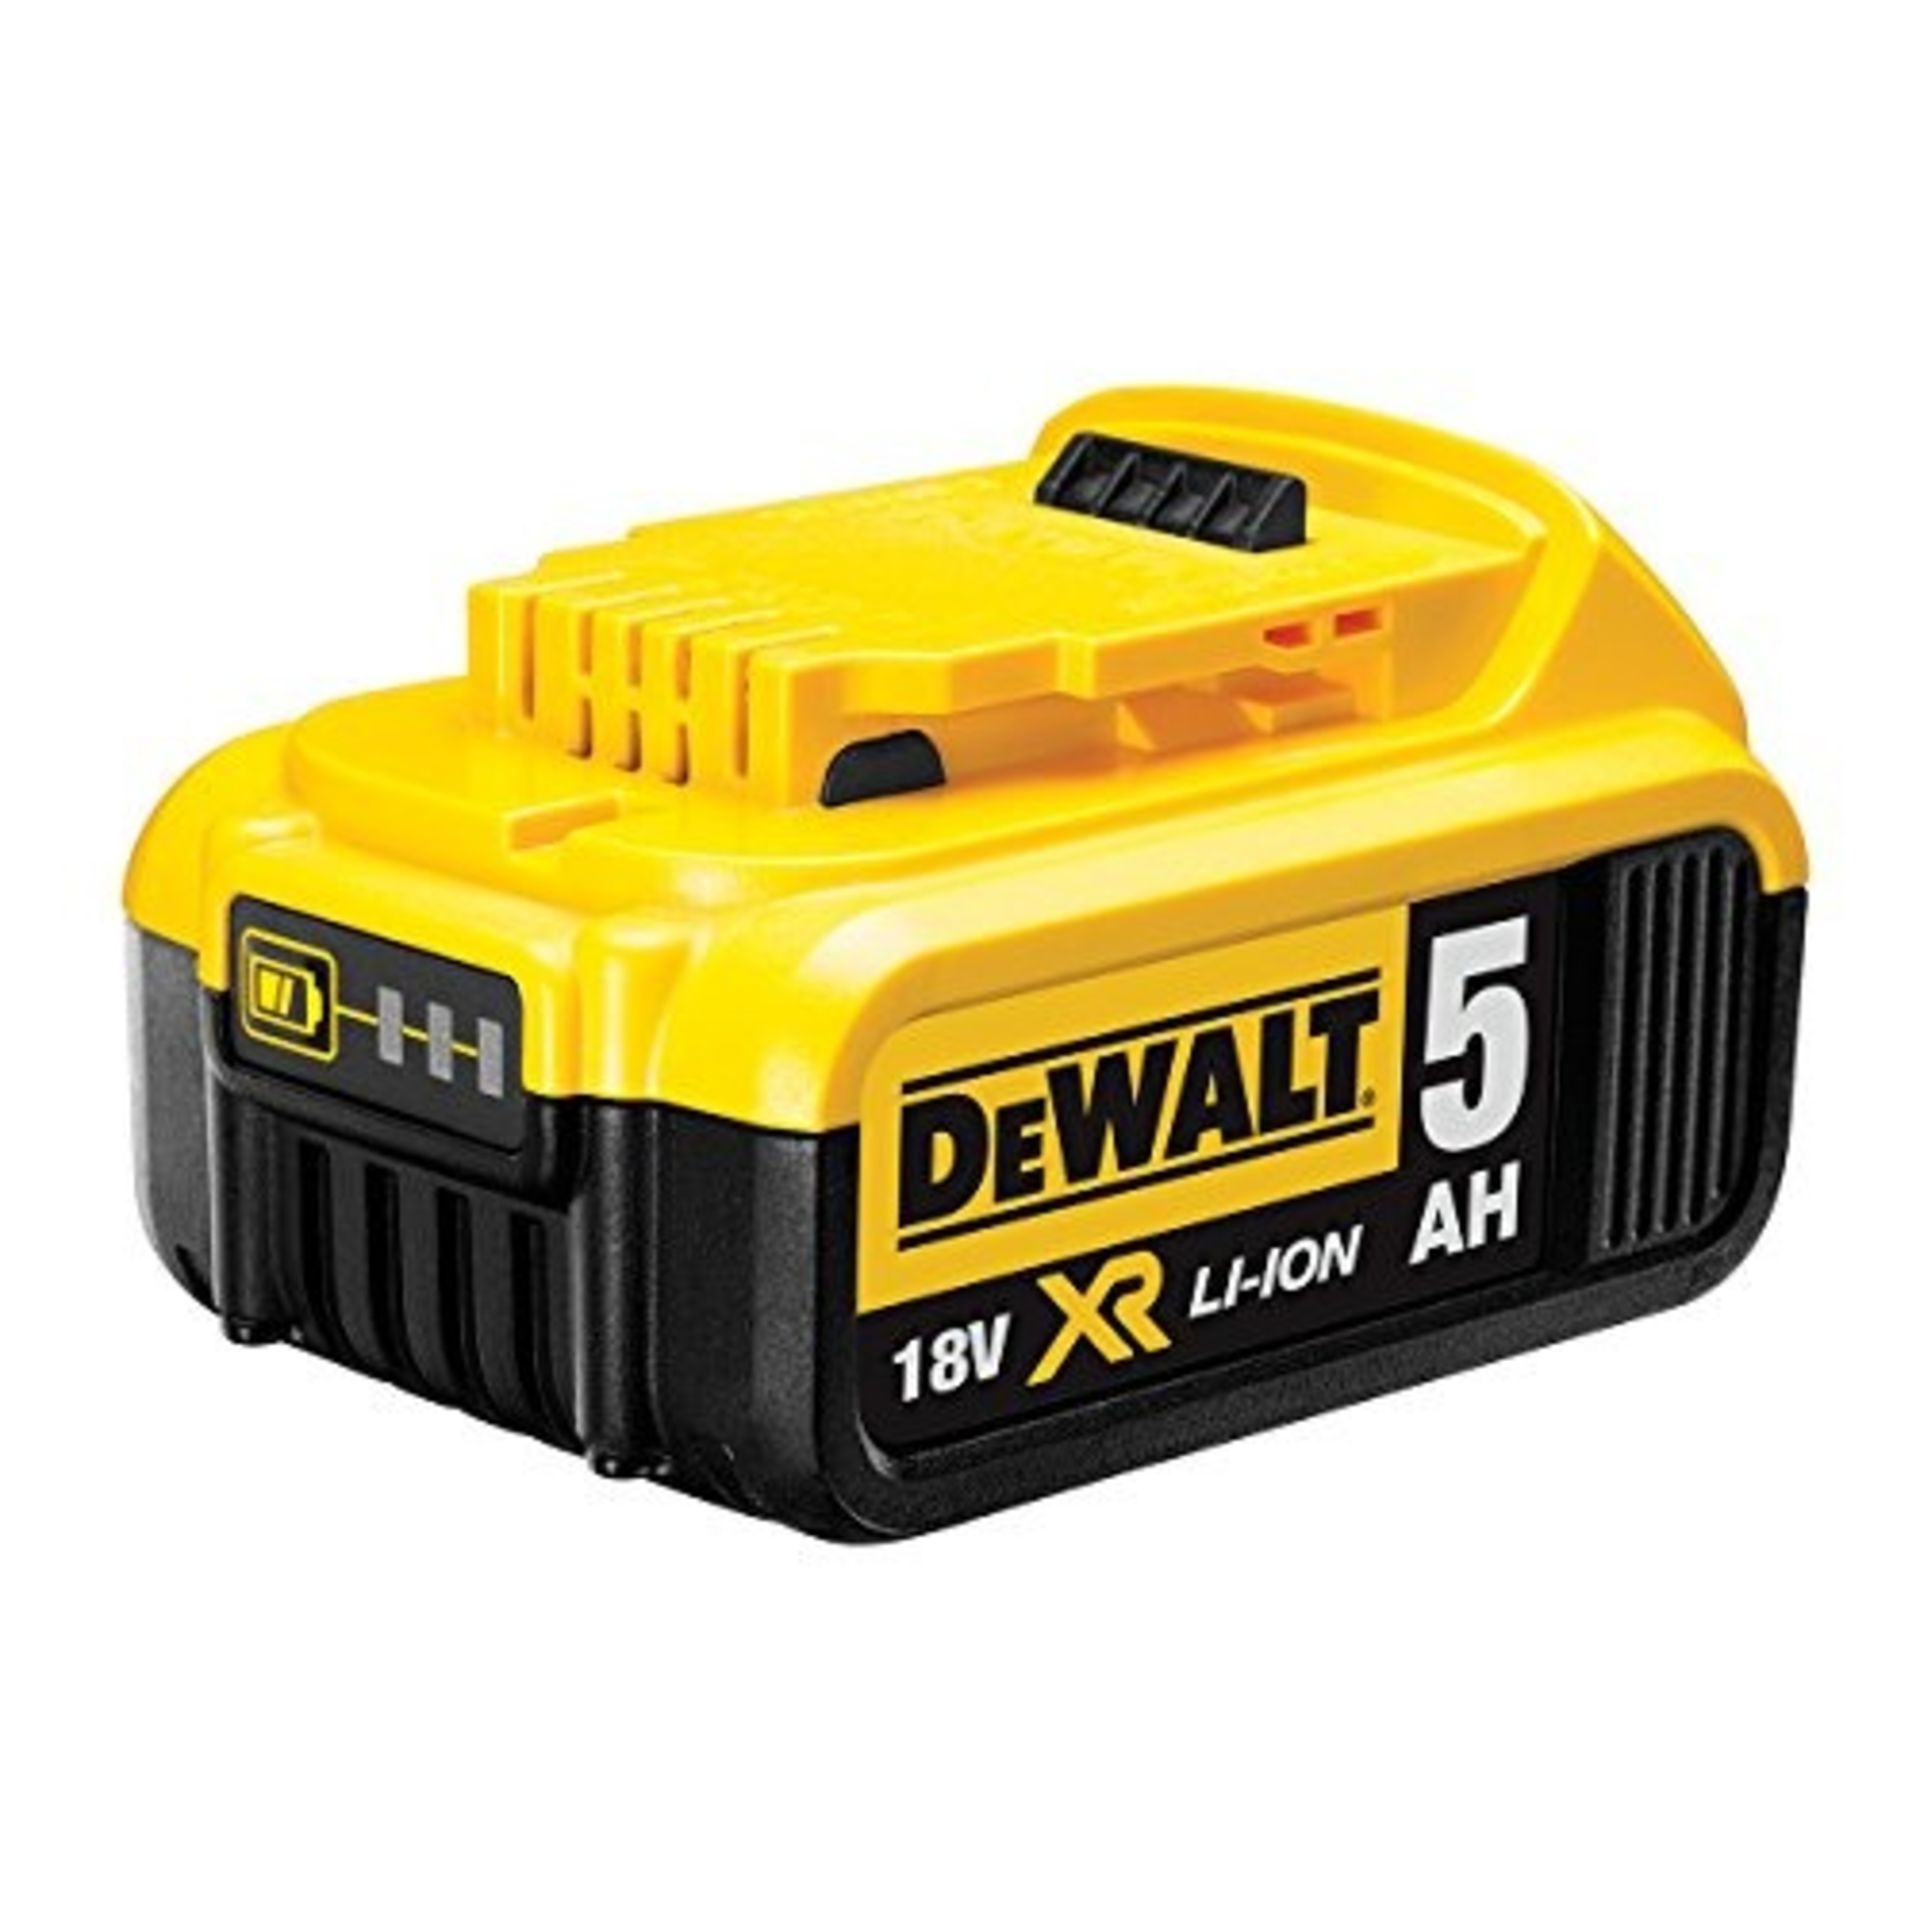 DeWalt 18V 5.0AH Battery Pack -ER40